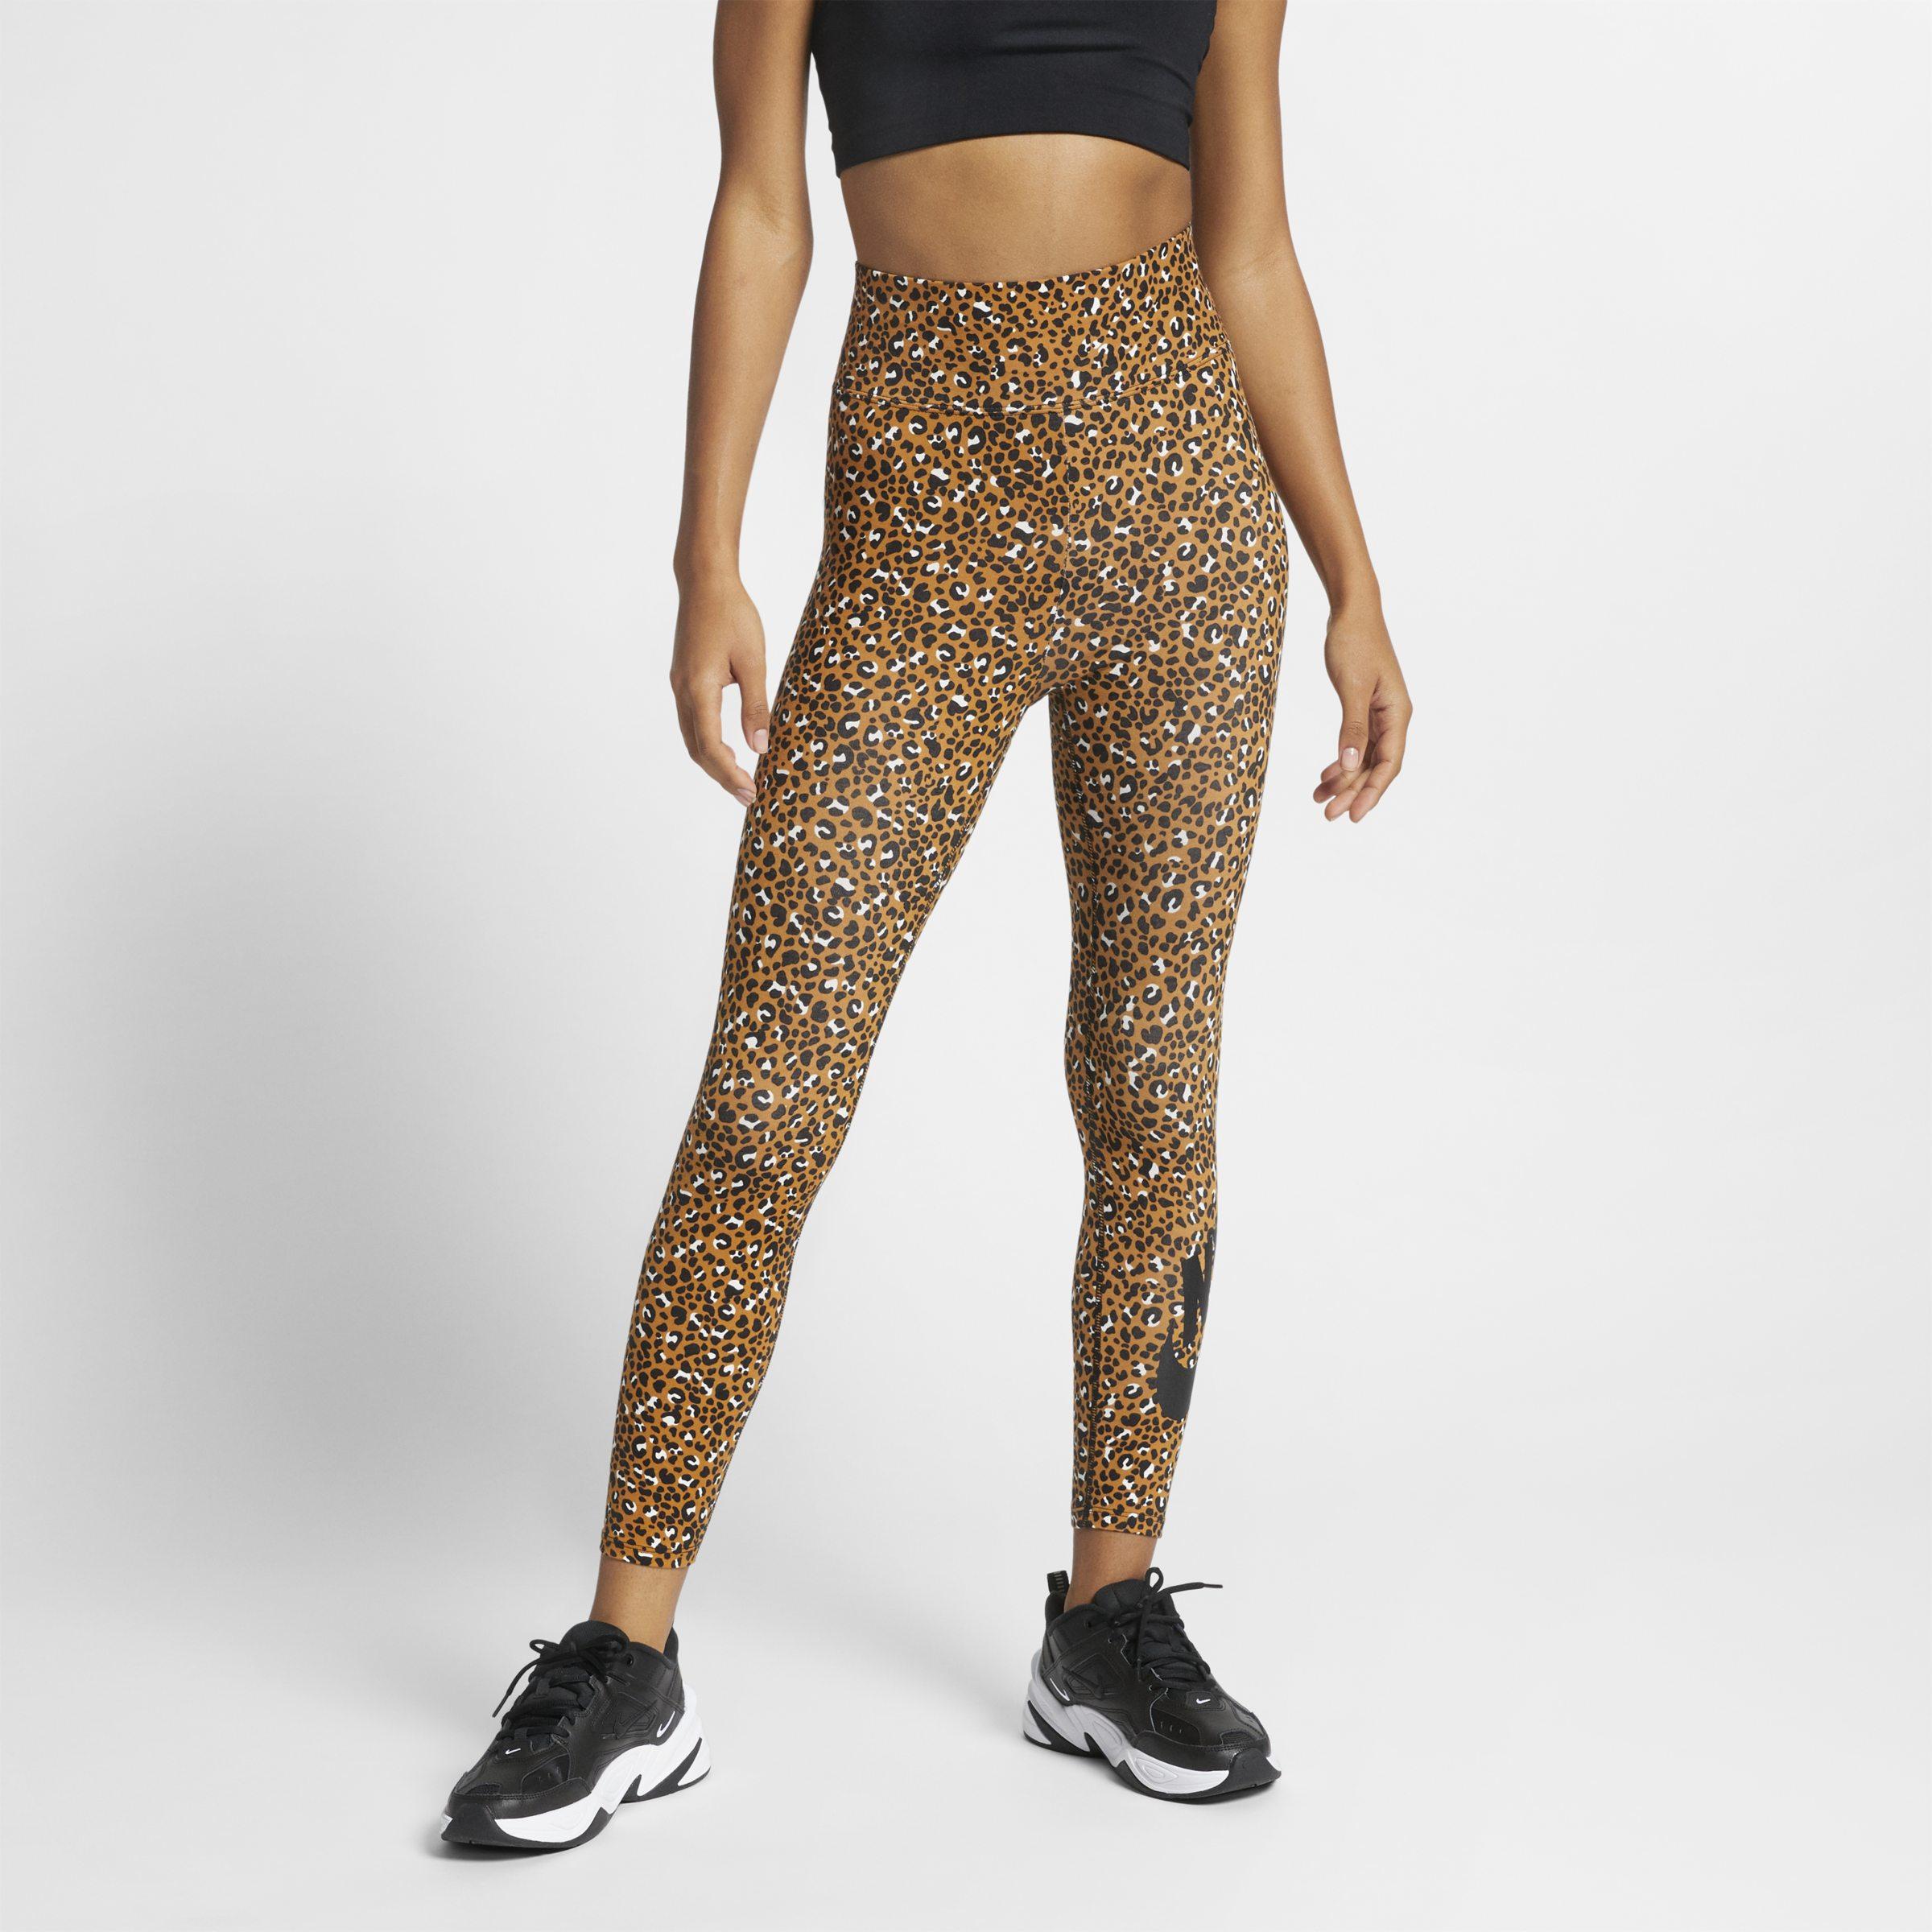 leopard nike leggings